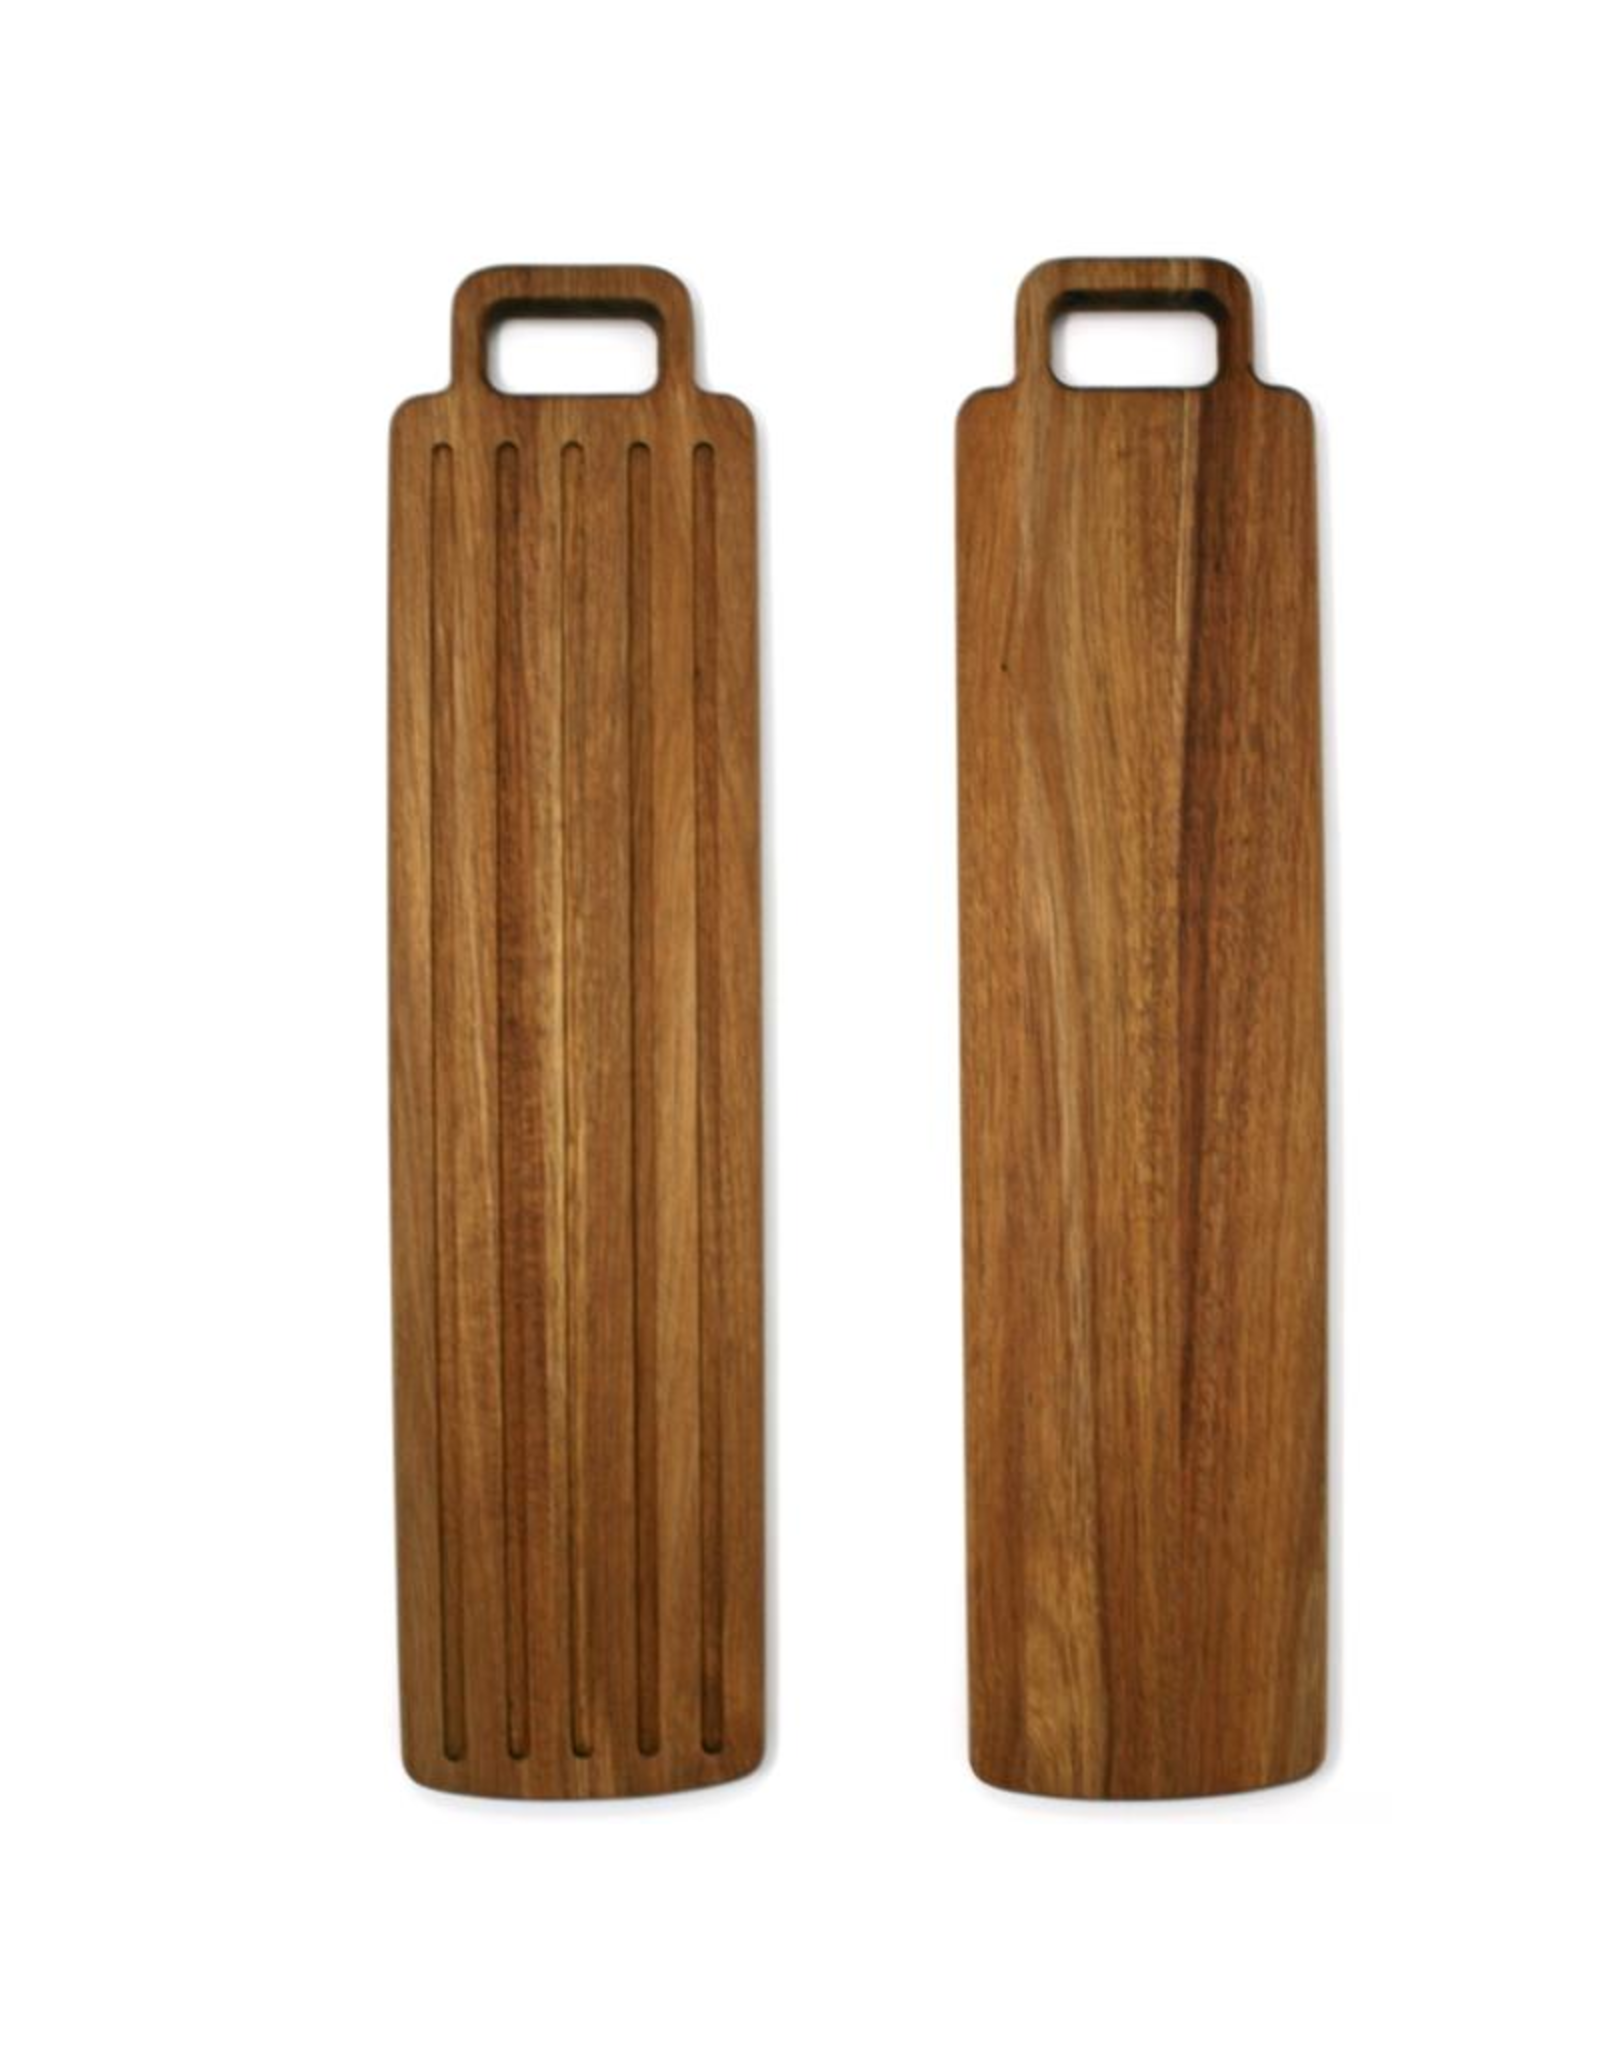 Planche à pain en bois réversible 52 x 12cm